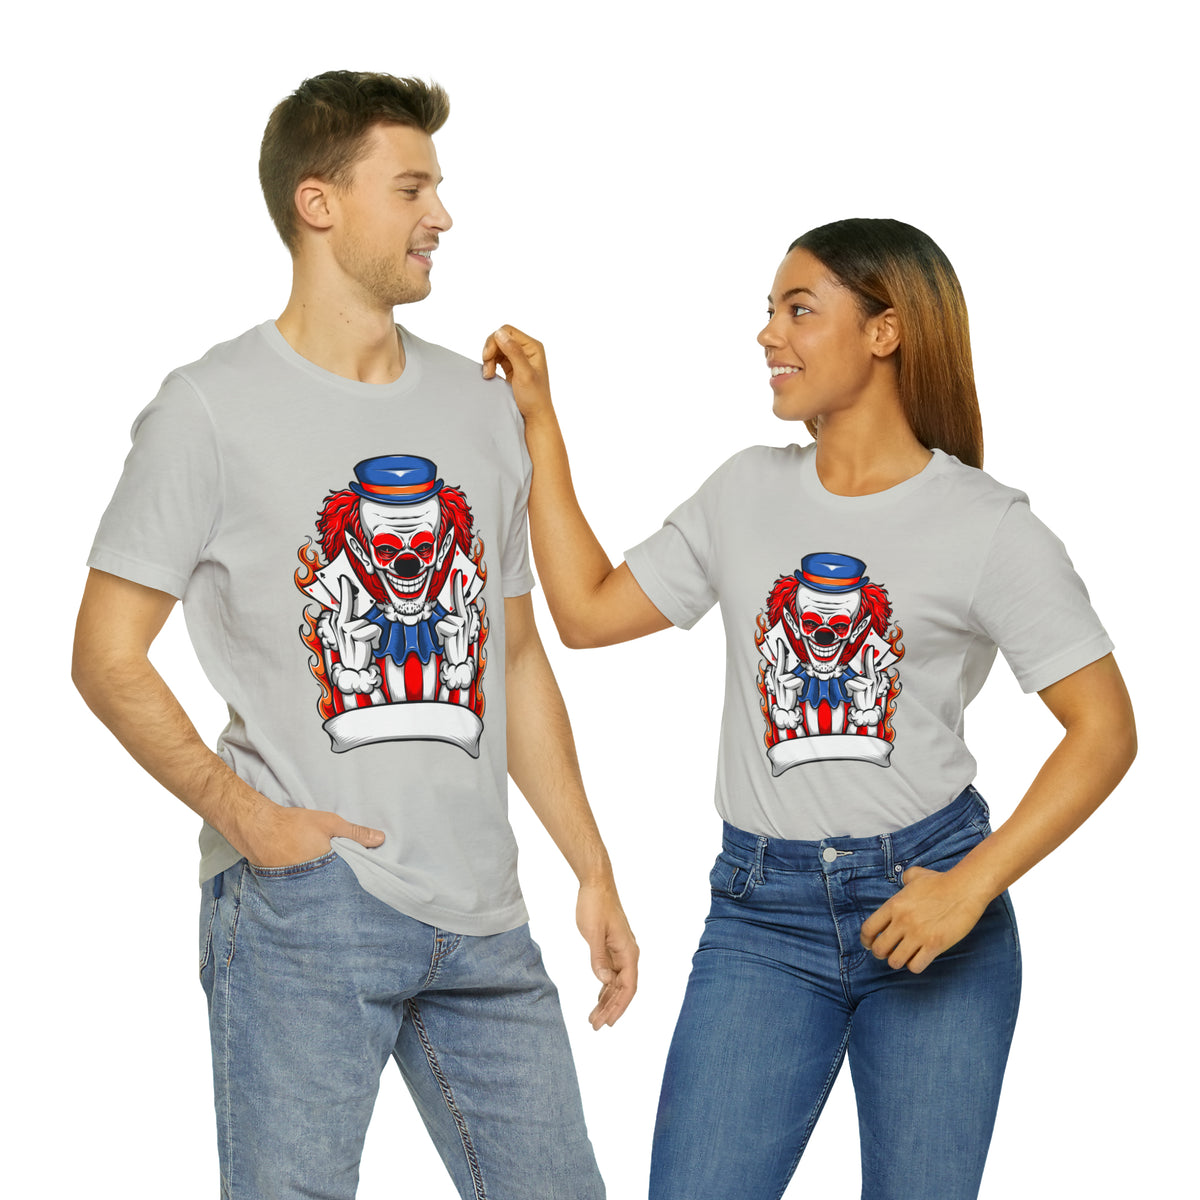 Clown T Shirt Design Unisex Jersey